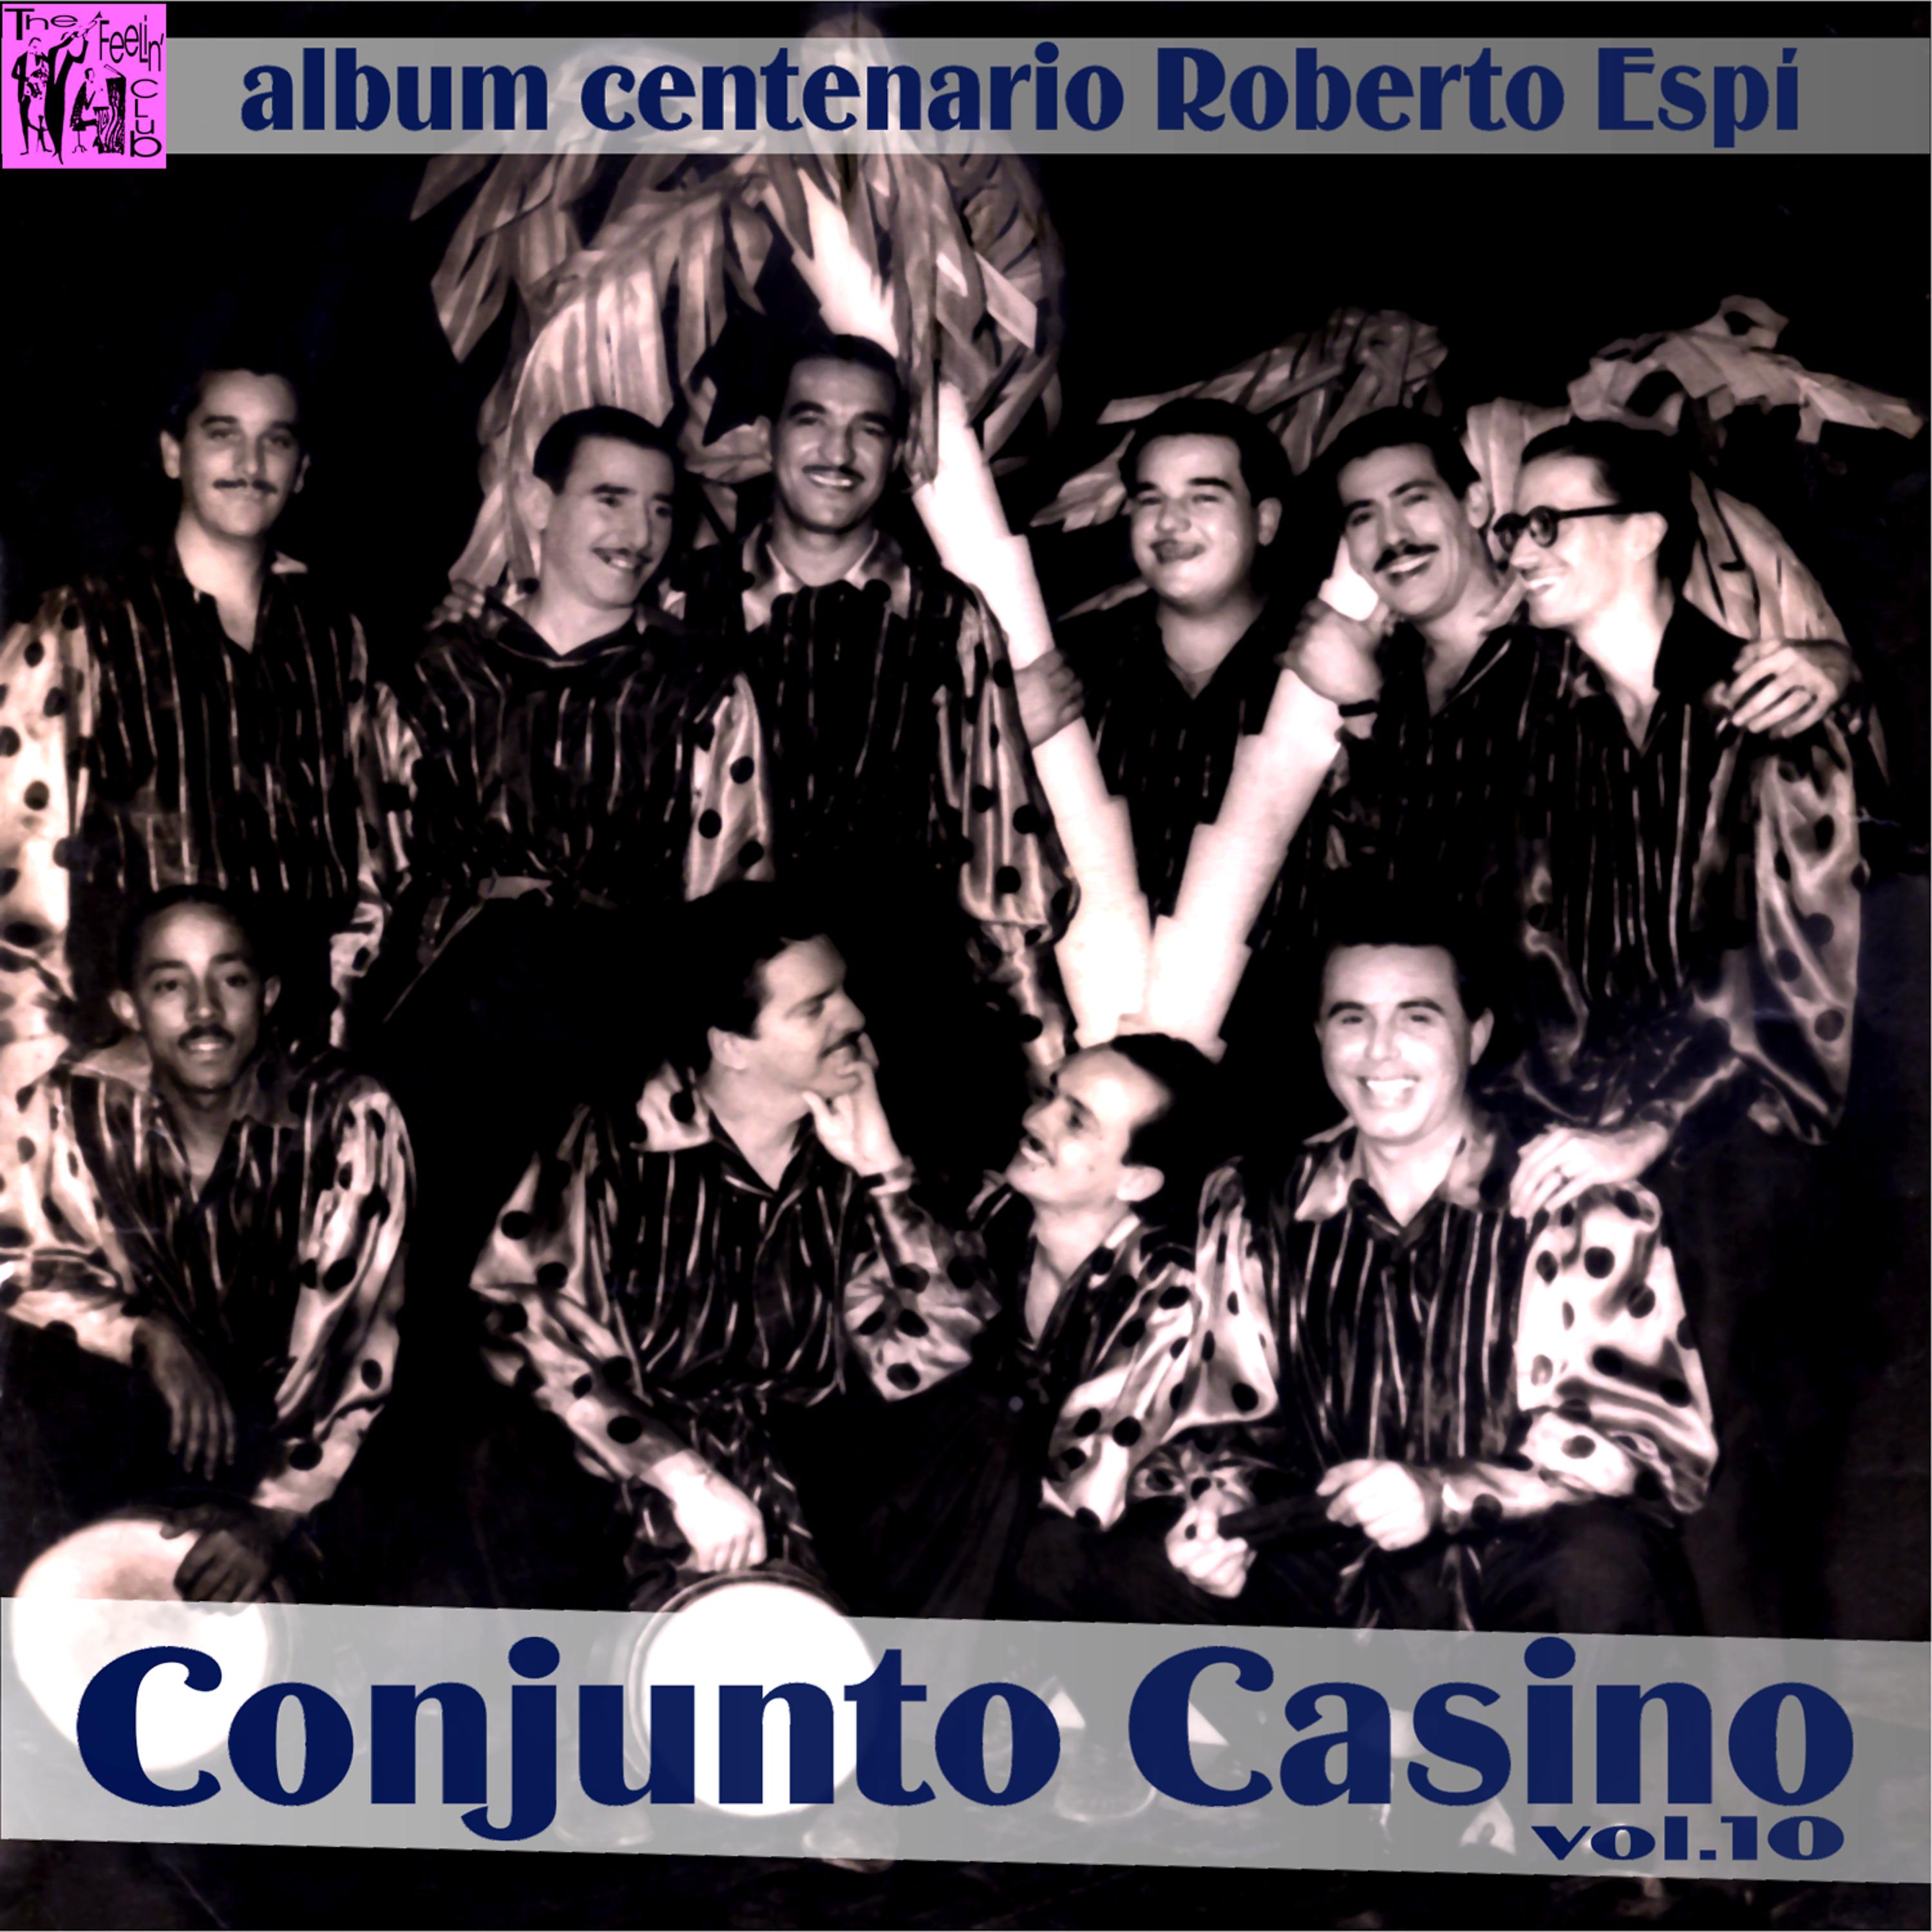 Постер альбома Centenario Roberto Espí: Conjunto Casino, Vol.10